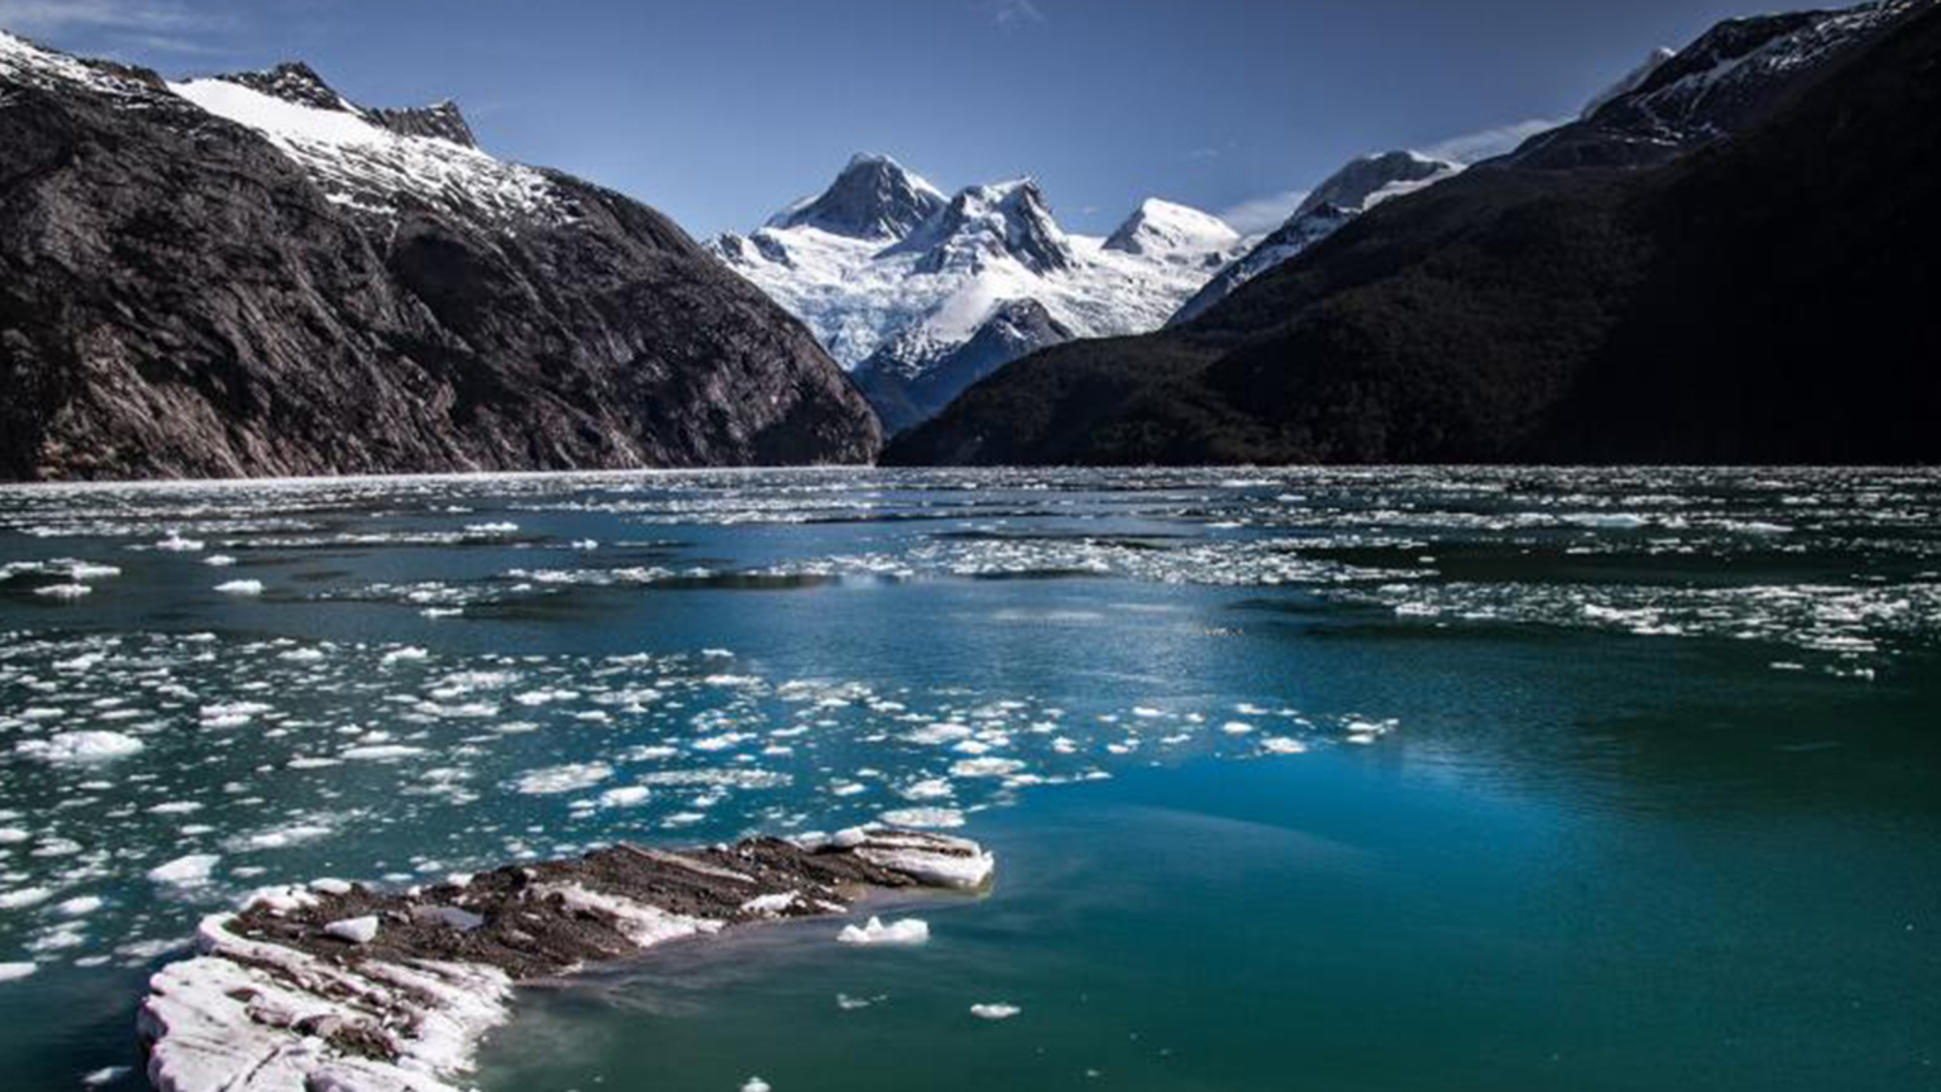 Senadores de oposición piden votar proyecto que protege a los glaciares